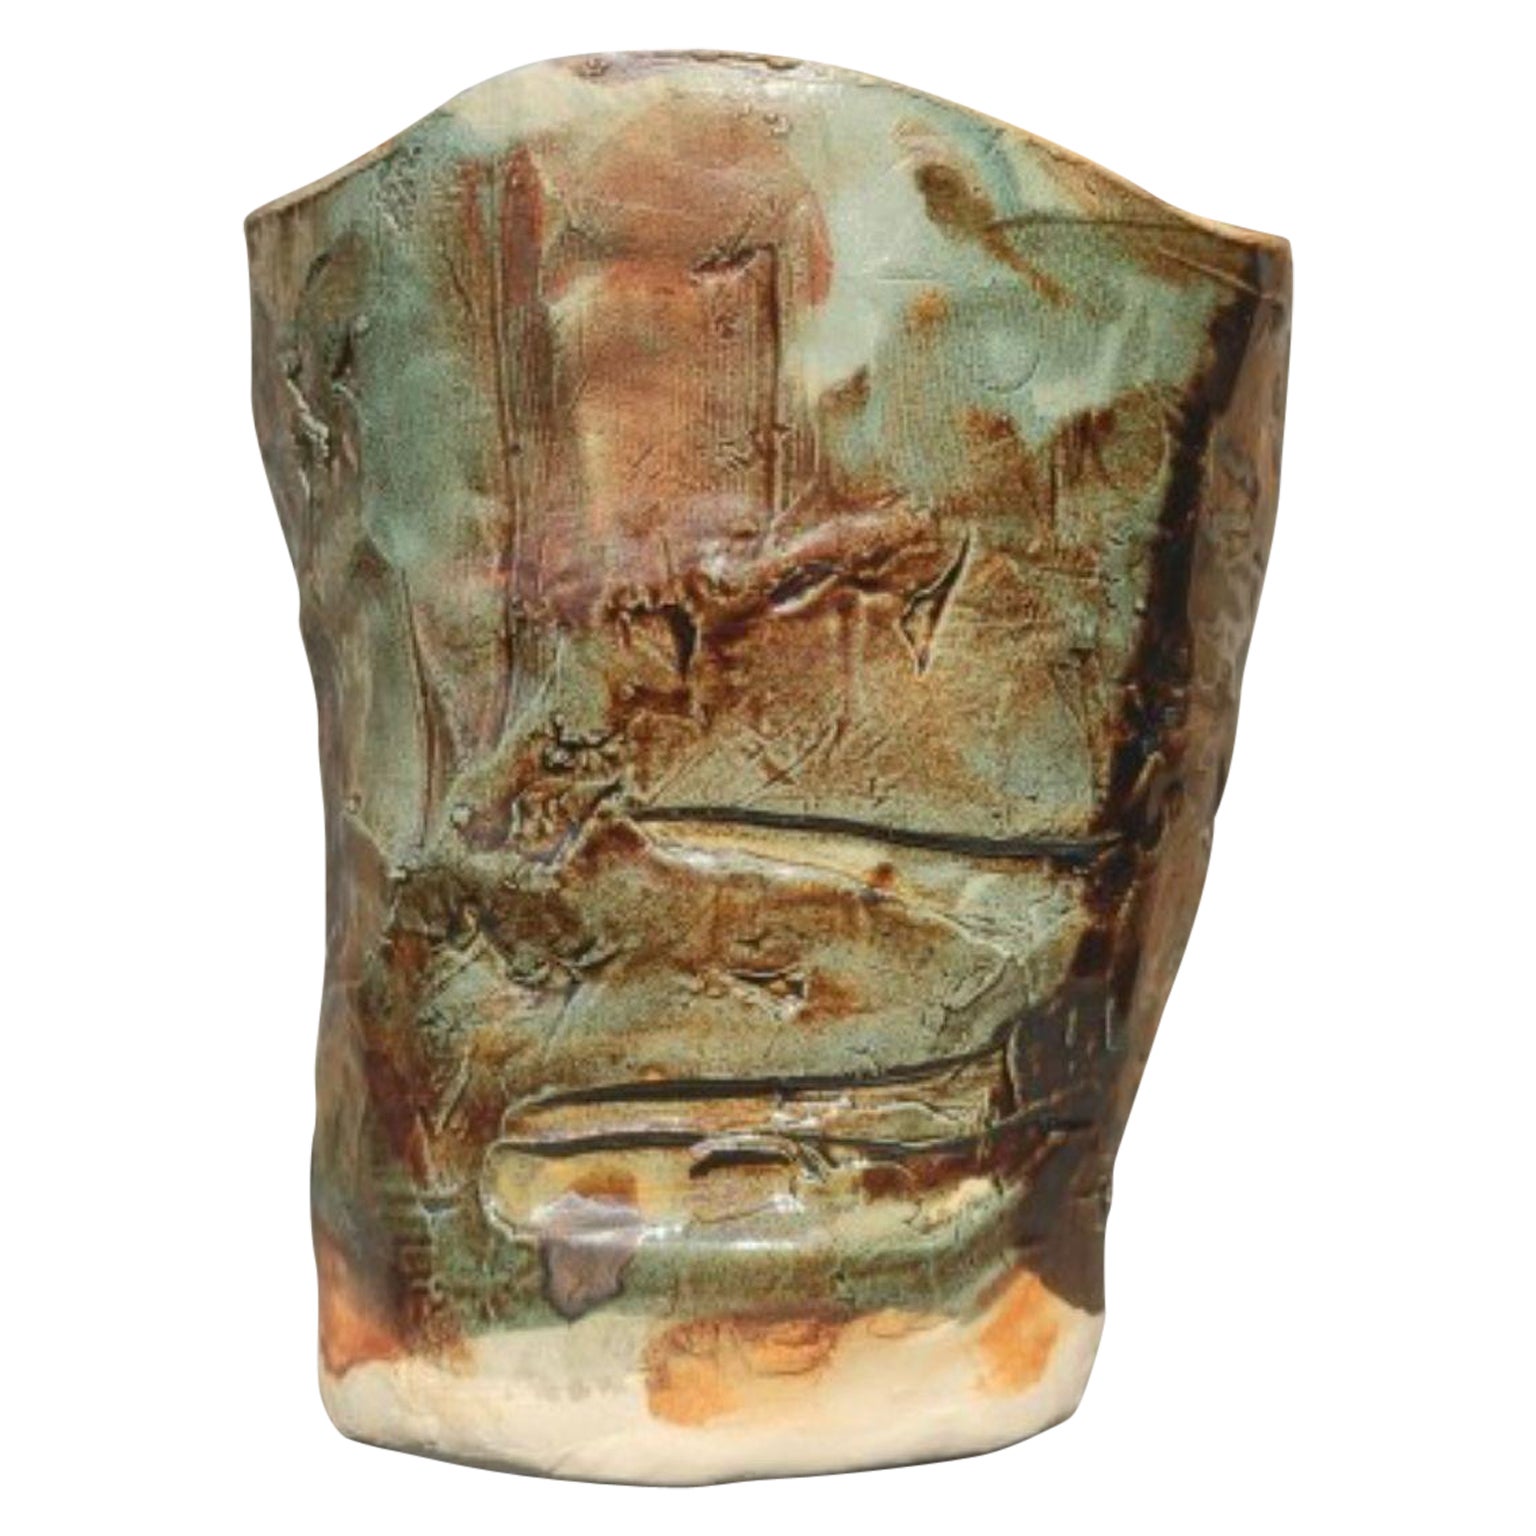 Rustyvase 1 Stoneware Vase by Odatempo